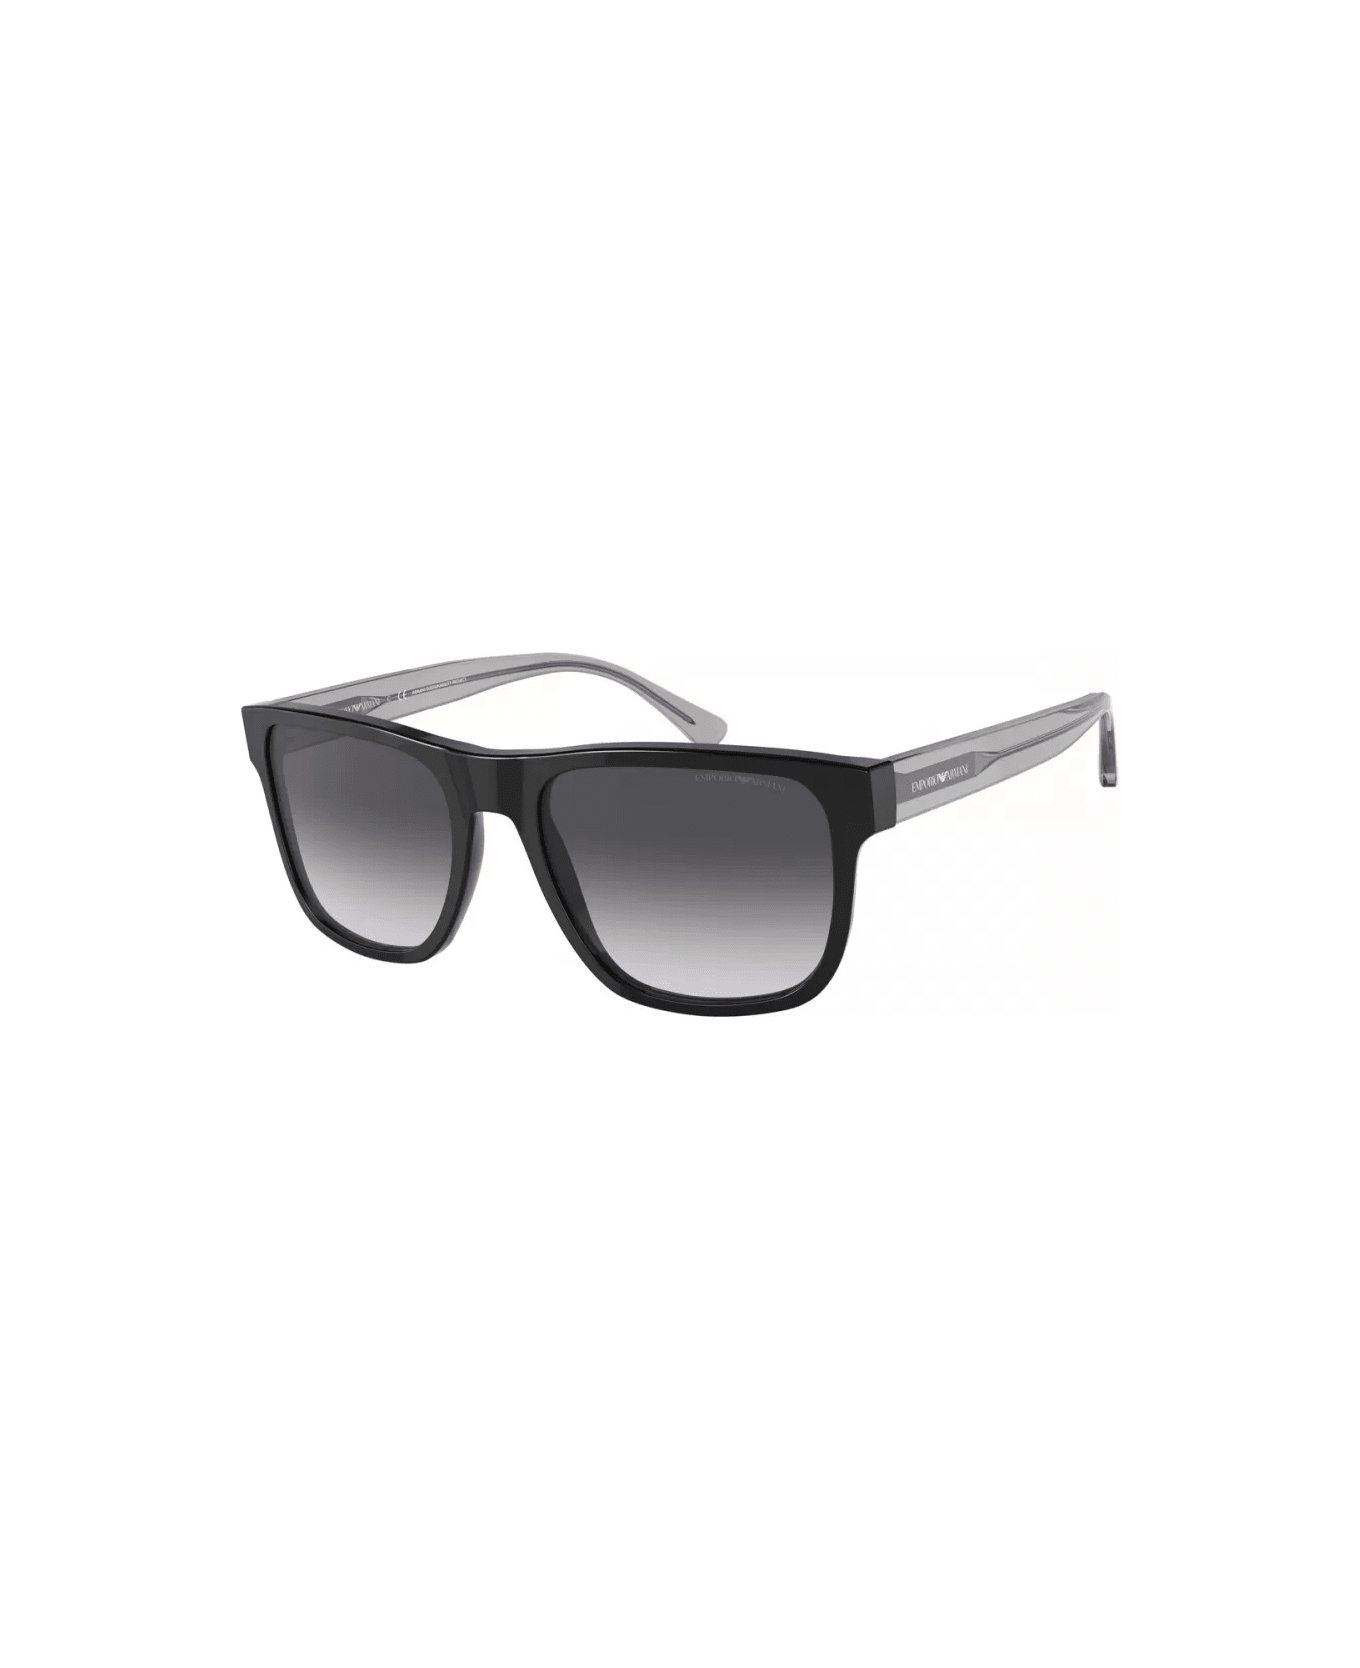 Emporio Armani EA4163 5875/8G Sunglasses サングラス